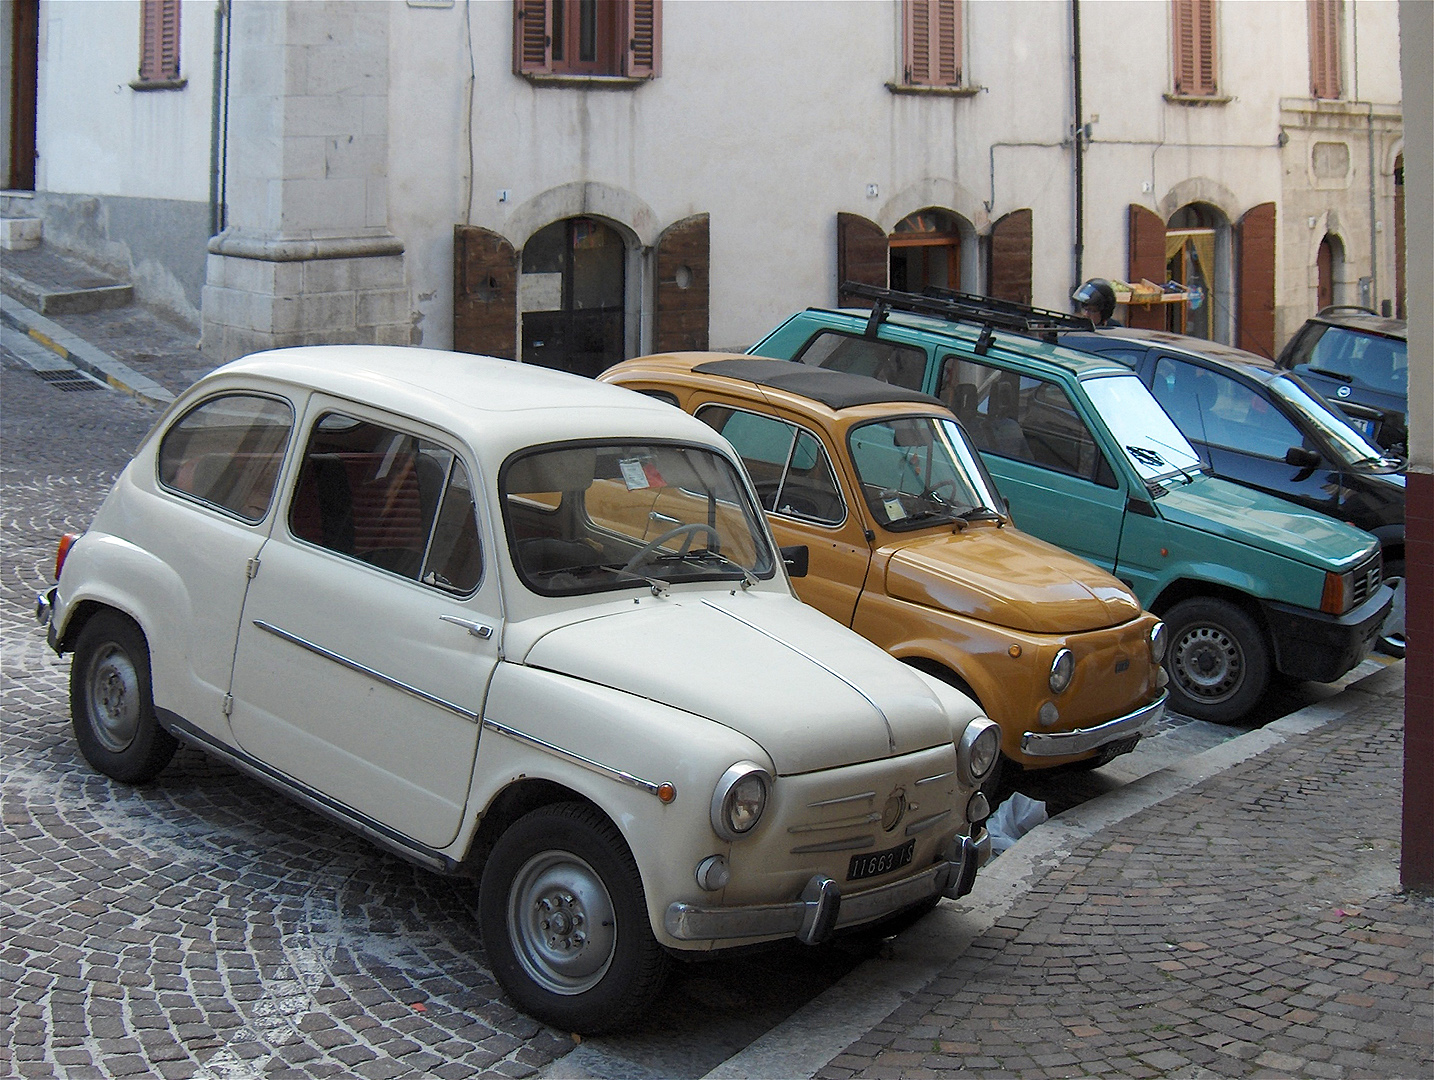 Fiat 600, Fiat 500 en Fiat Panda, Fiat 600, Fiat 500 and Fiat Panda